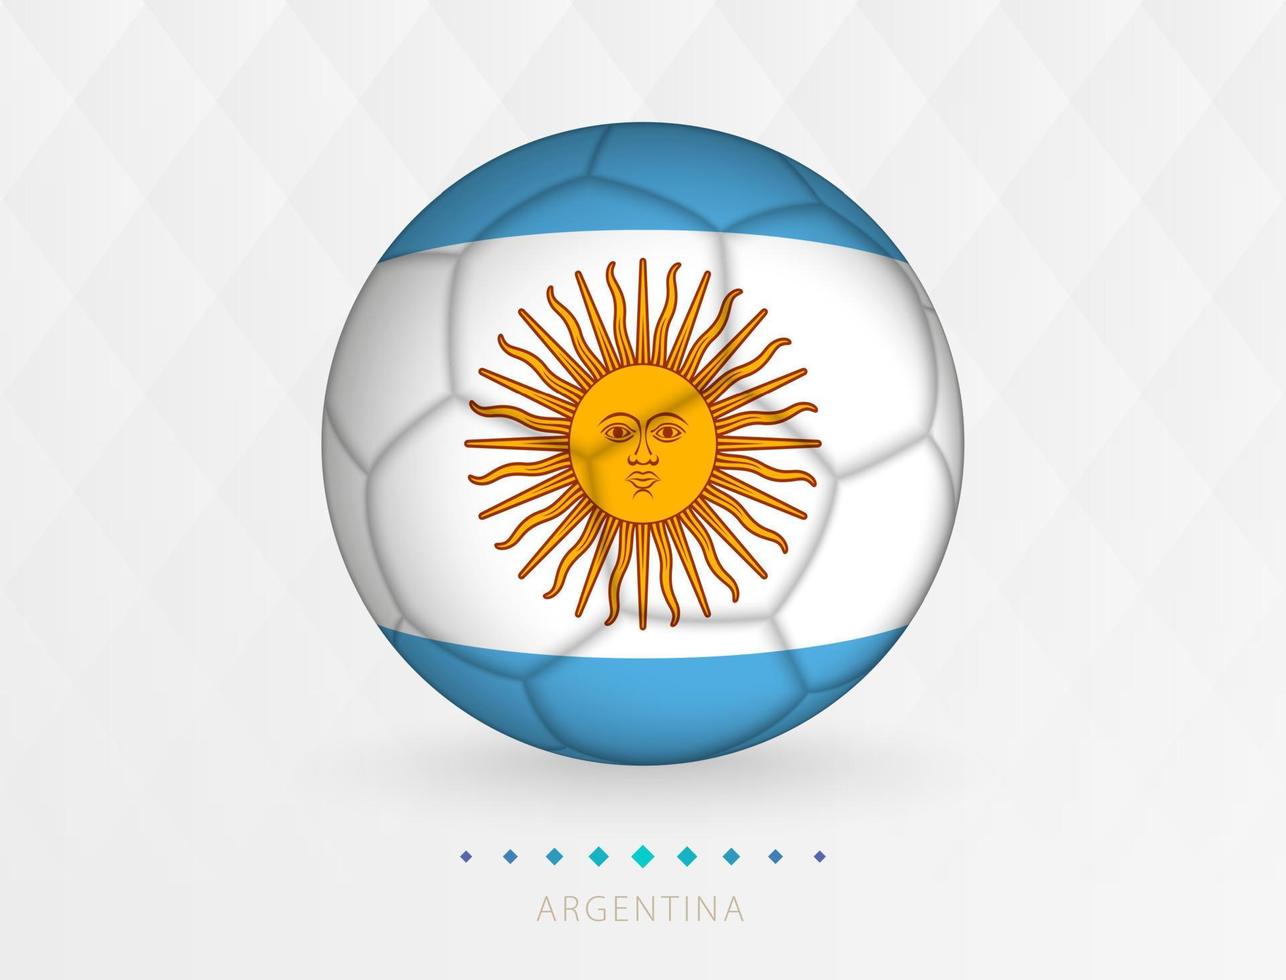 Amerikaans voetbal bal met Argentinië vlag patroon, voetbal bal met vlag van Argentinië nationaal team. vector